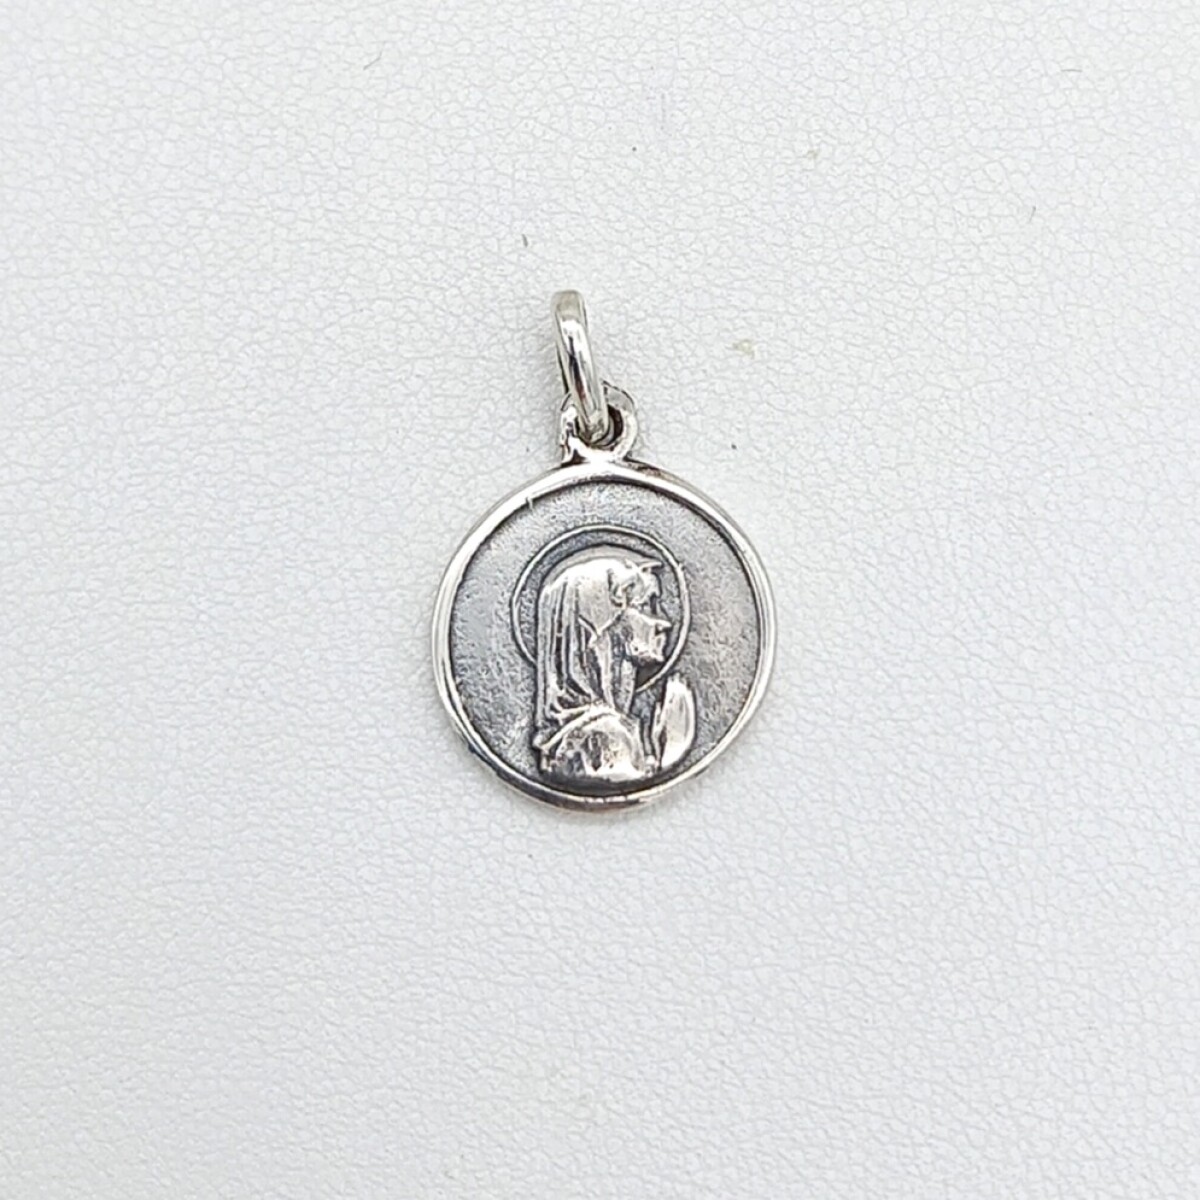 Medalla religiosa de plata 925, Virgen Niña con manto, diámetro 13.5mm. 